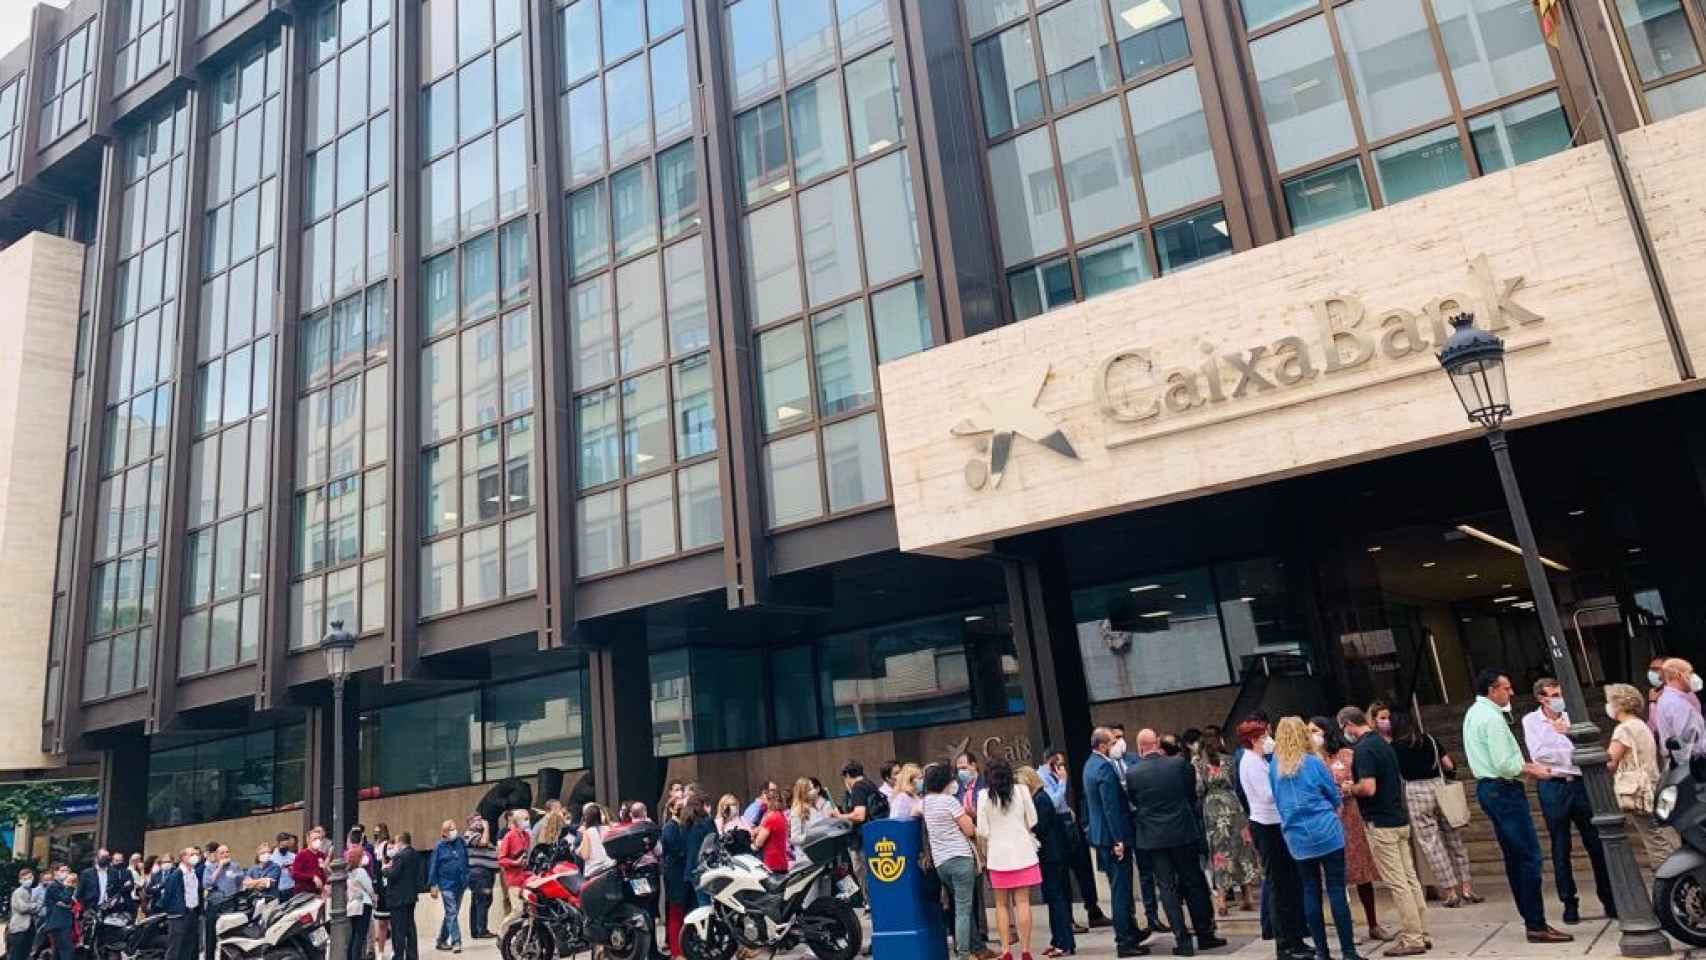 Los trabajadores de CaixaBank realizan paros parciales y se concentran frente a las sedes del banco en protesta por el ERE.